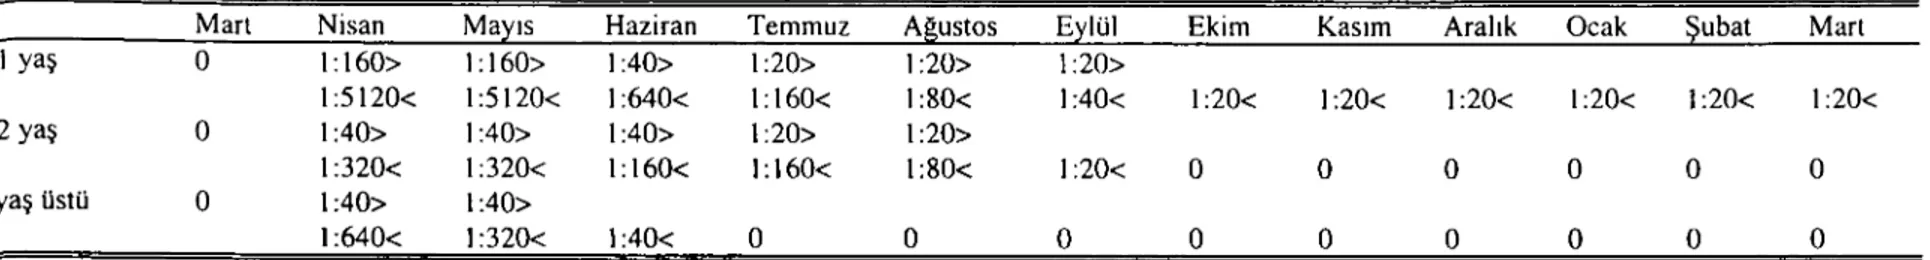 Tablo 8. Tropikal theileriosis'e karşı aşılanmış hayvanlarda, lFA testi ile tespit edilen en yüksek ve en düşük T.annu/ata piroplasm antikor titrelerinin aylara göre dağılımı Table 8